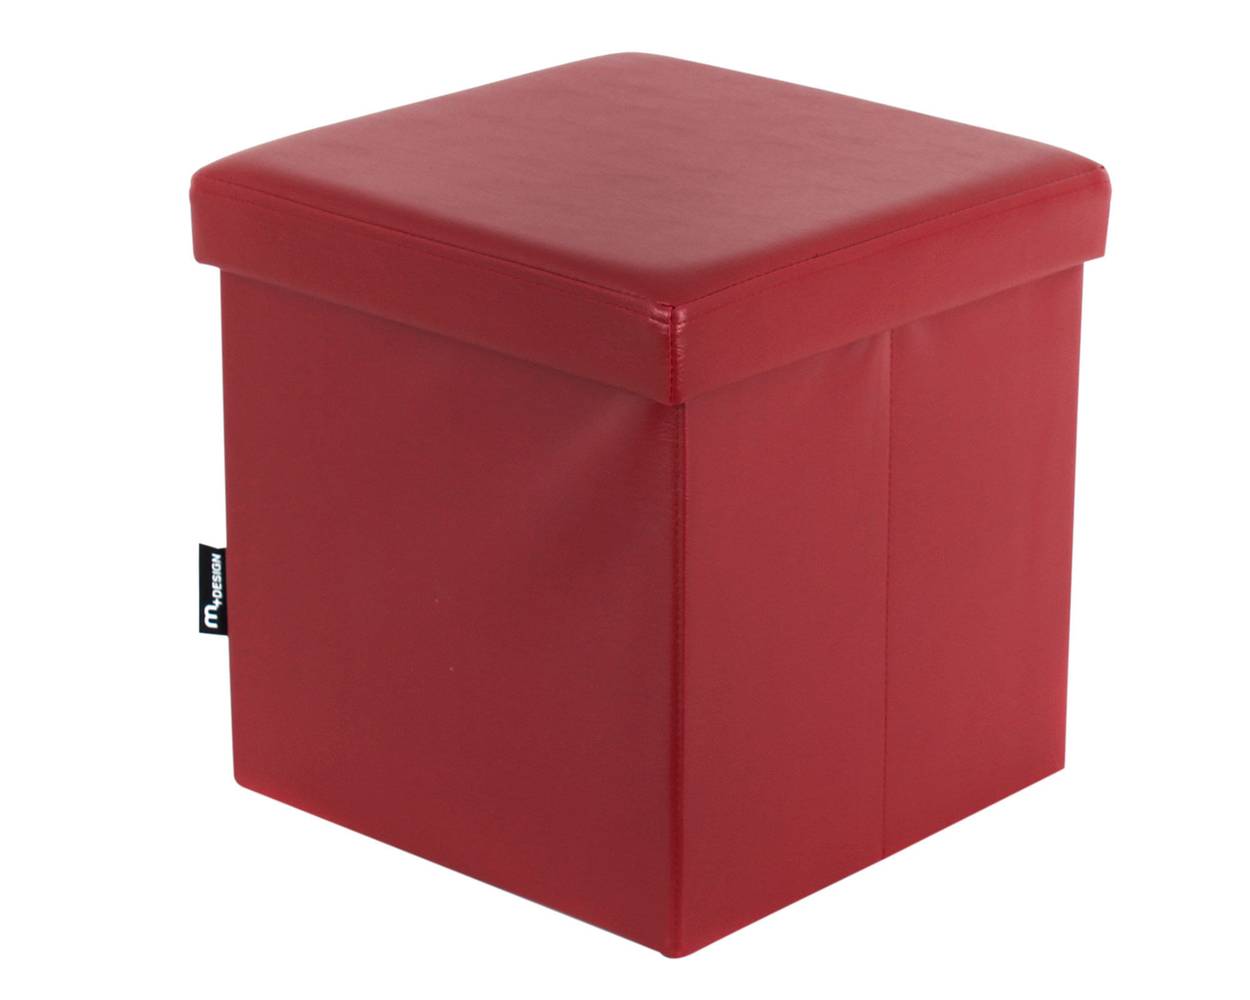 M+design pouf desarmable rojo 2.0 (38 x 38 x 38 cm)